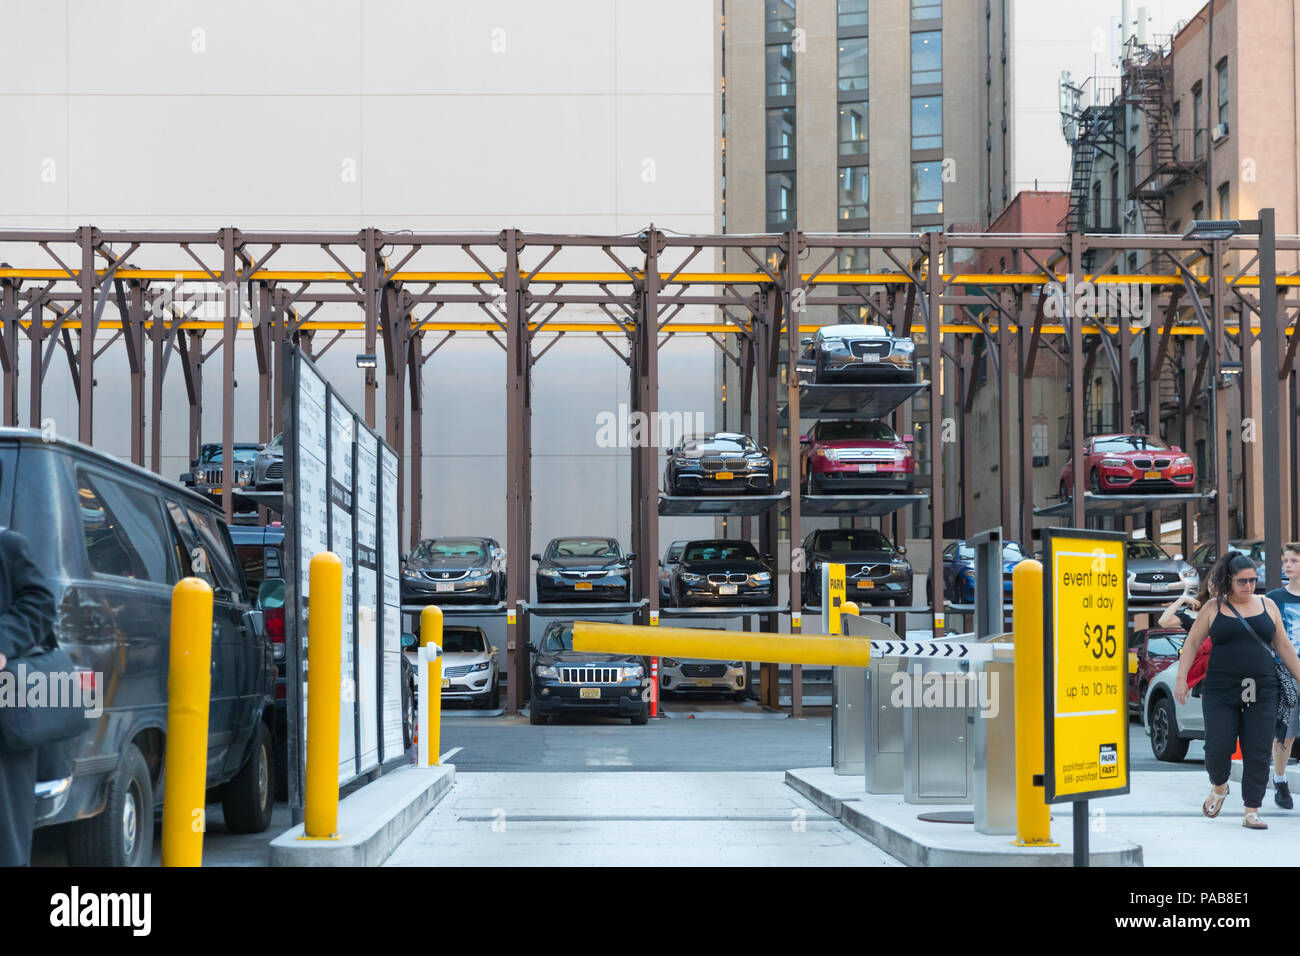 New York, 19. Juli 2018: Automatisierte Parkplatz-System zur Unterstützung der Mangel an Parkplätzen in der Stadt. Stockfoto